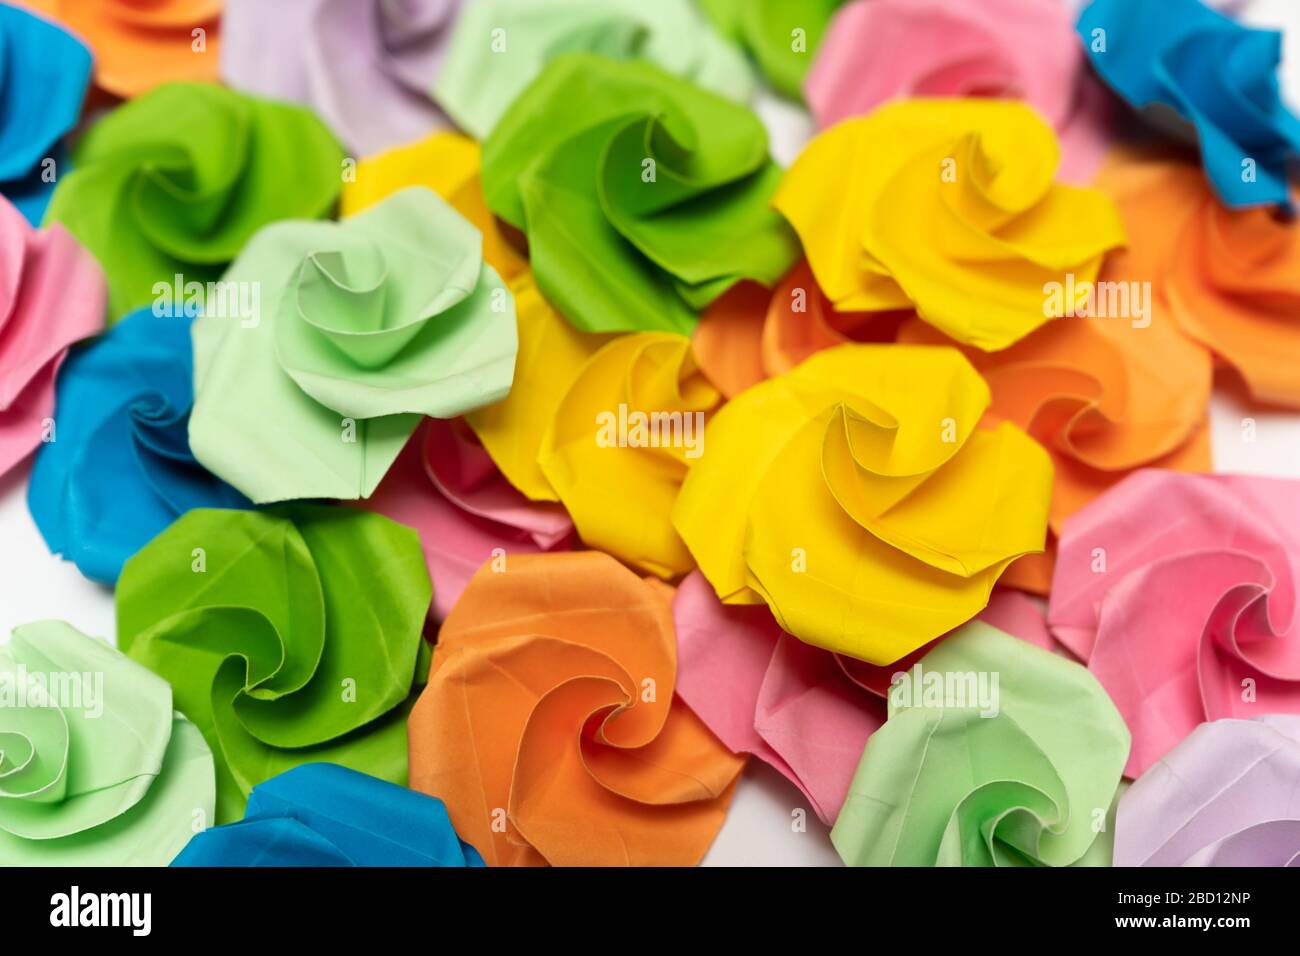 Gros plan de nombreuses fleurs en papier d'origami couvrant complètement une région Banque D'Images